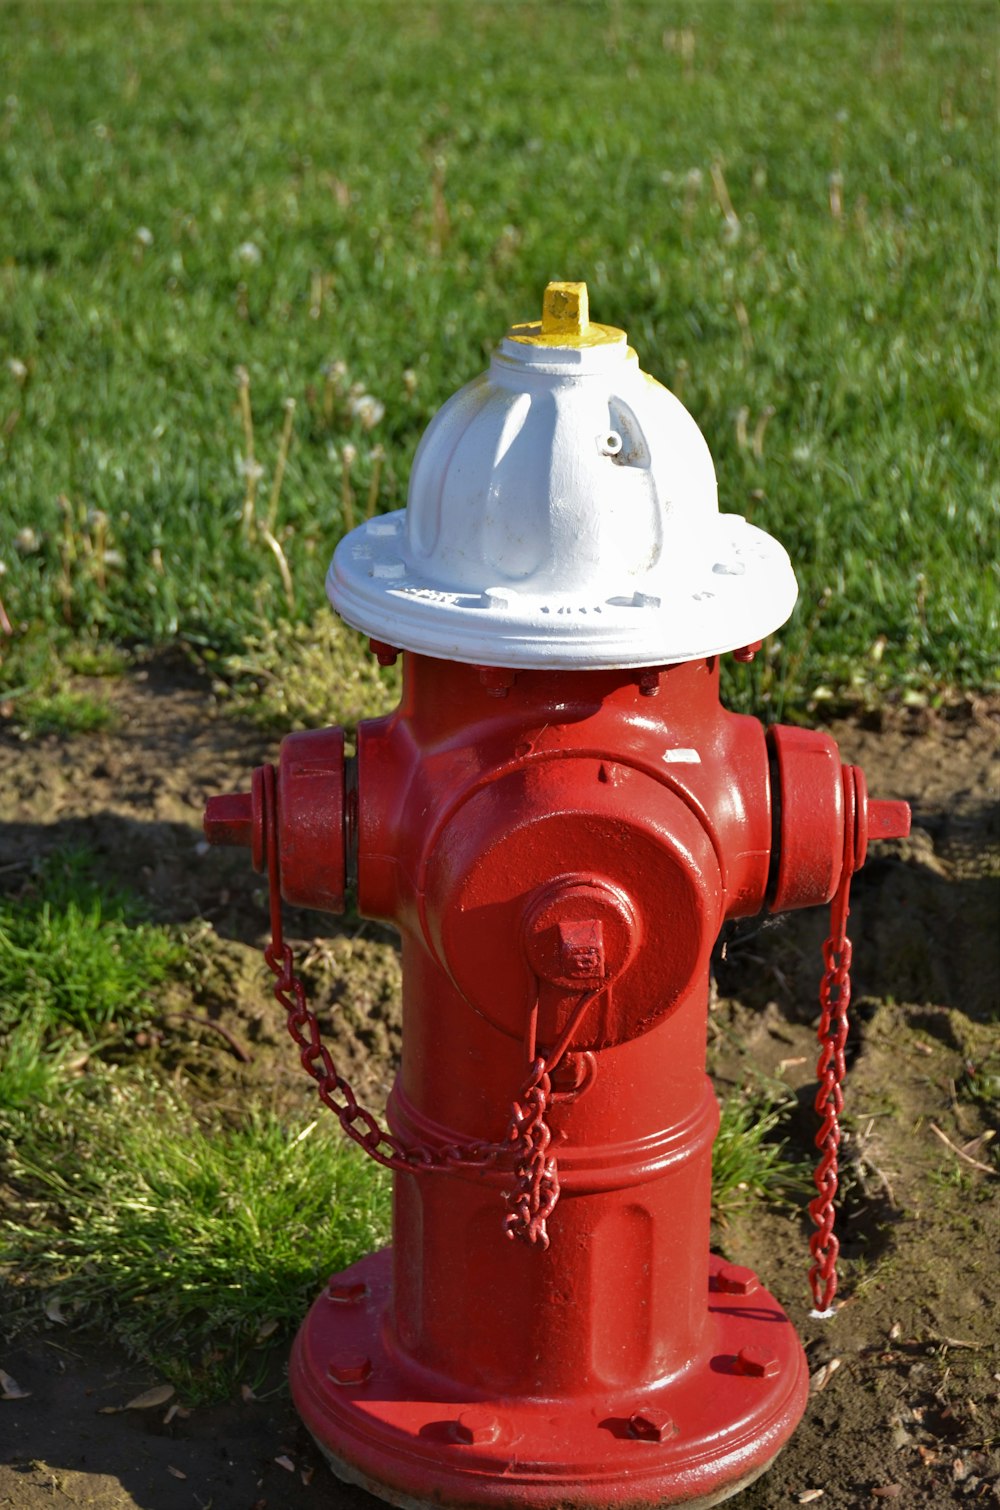 hidrante vermelho no campo de grama verde durante o dia